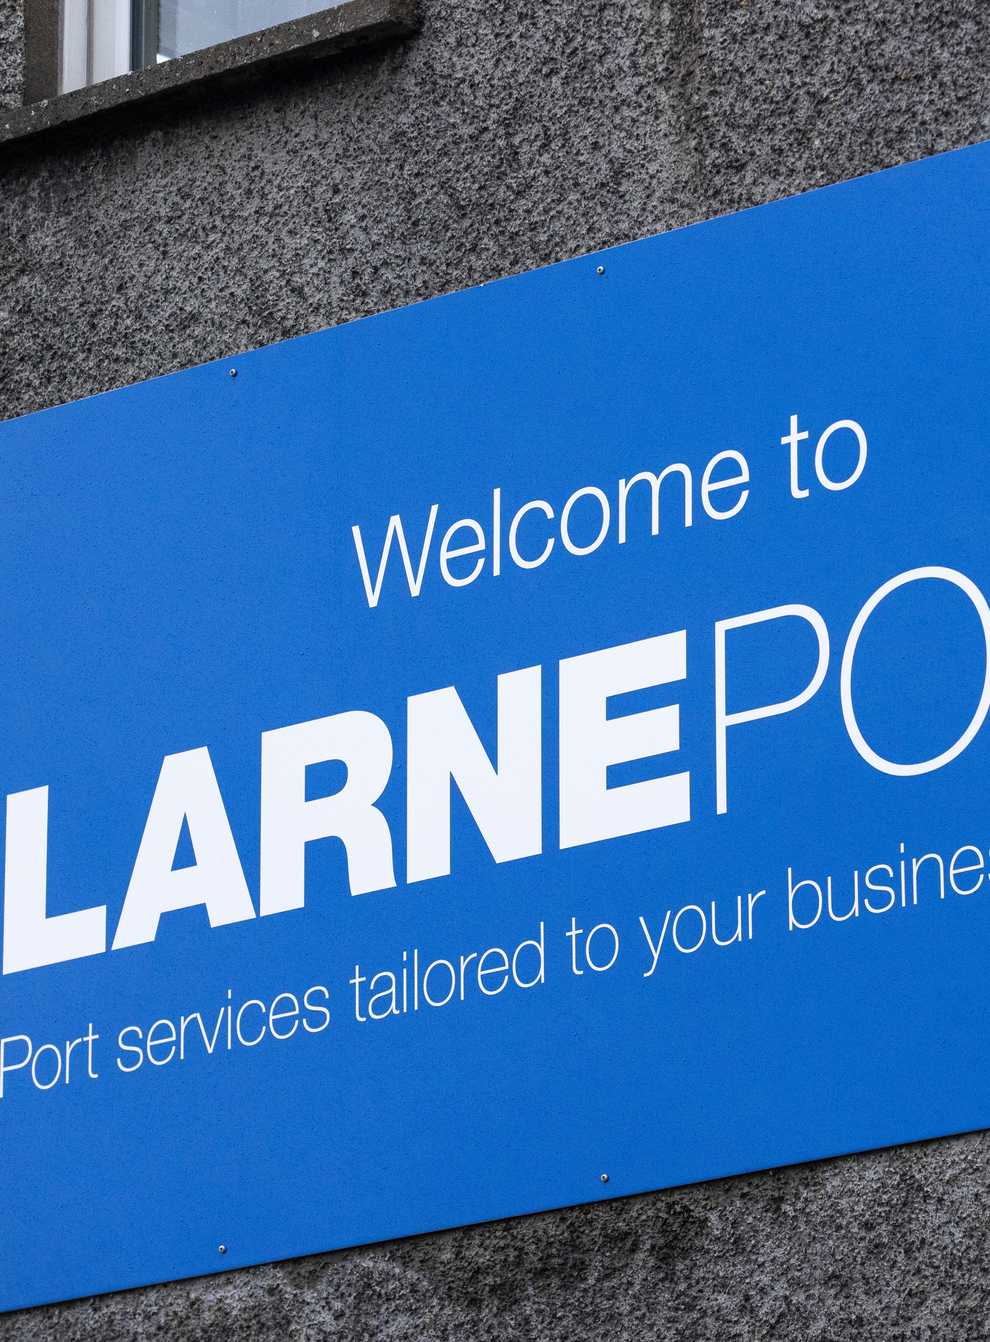 A sign for Larne Port